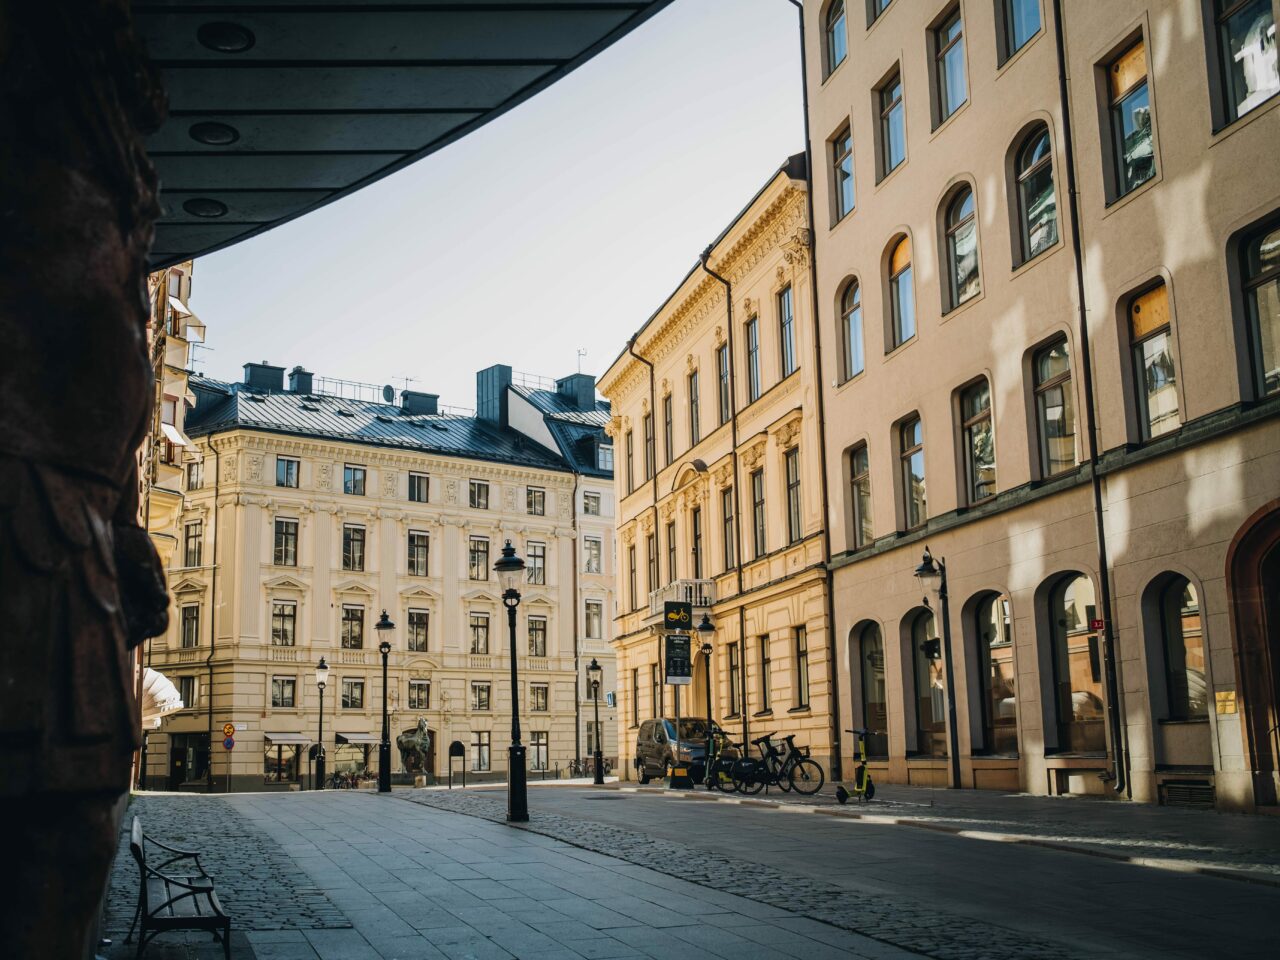 Pene bygg side om side i en gågate i Stockholm. Foto